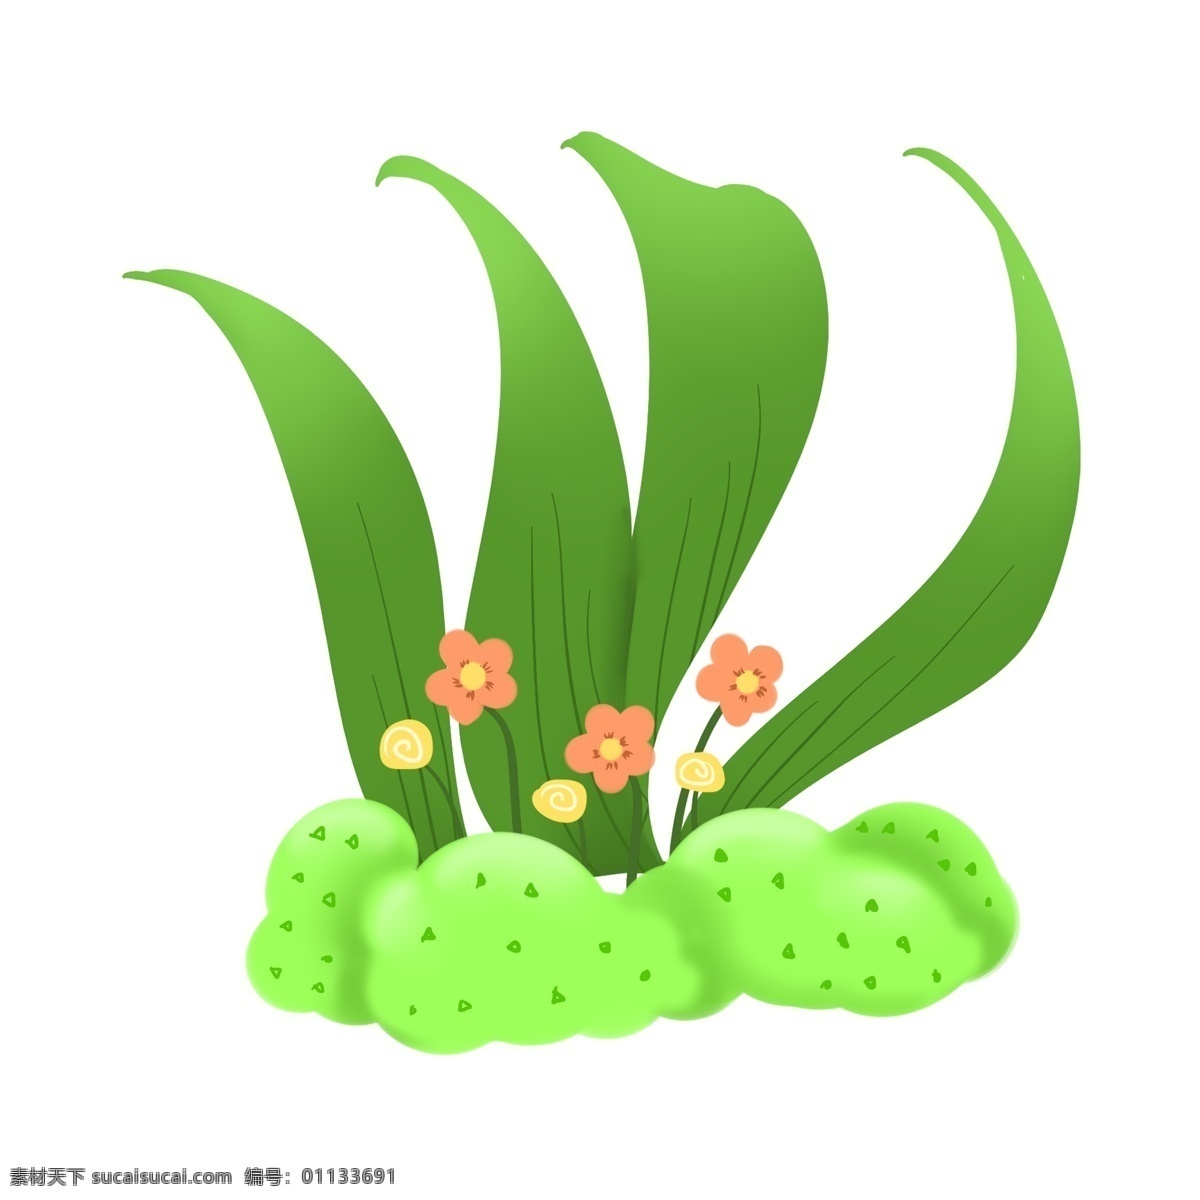 手绘 卡通 花朵 插画 手绘花朵 卡通花 春天 植物 开花 茂盛的花朵 绿色的大叶子 宽叶子 绿色 的卡 通 土壤